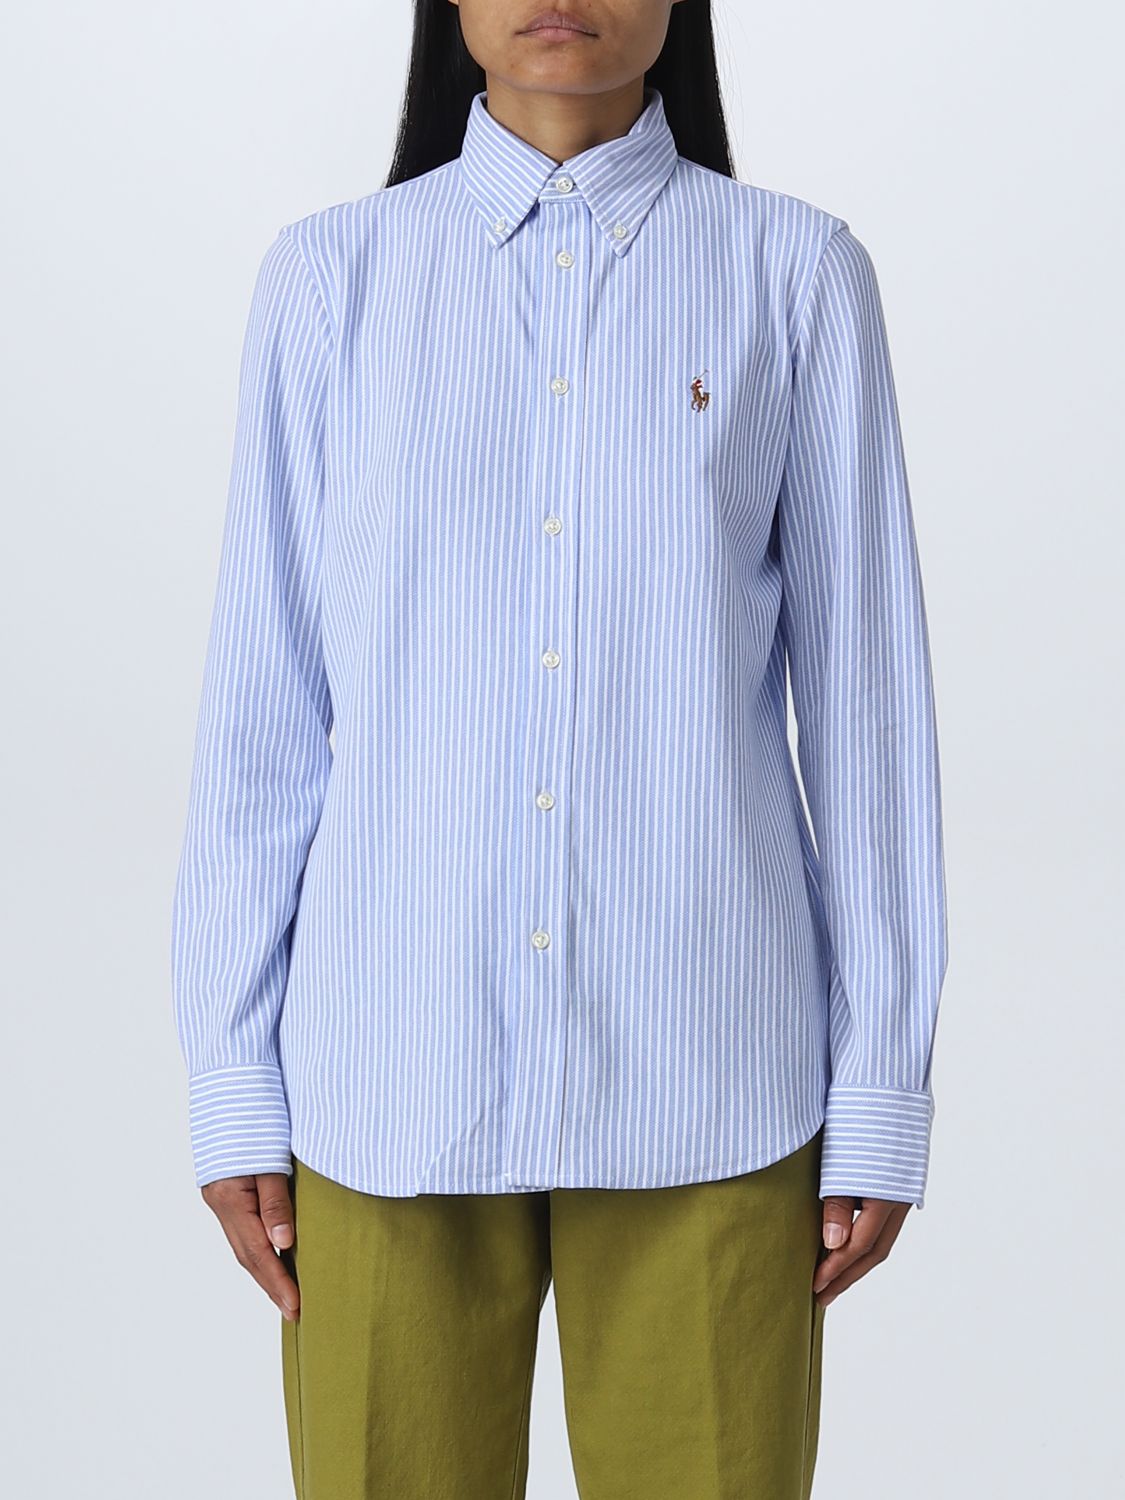 POLO RALPH LAUREN: shirt for woman - Sky Blue | Polo Ralph Lauren shirt  211664416 online on 